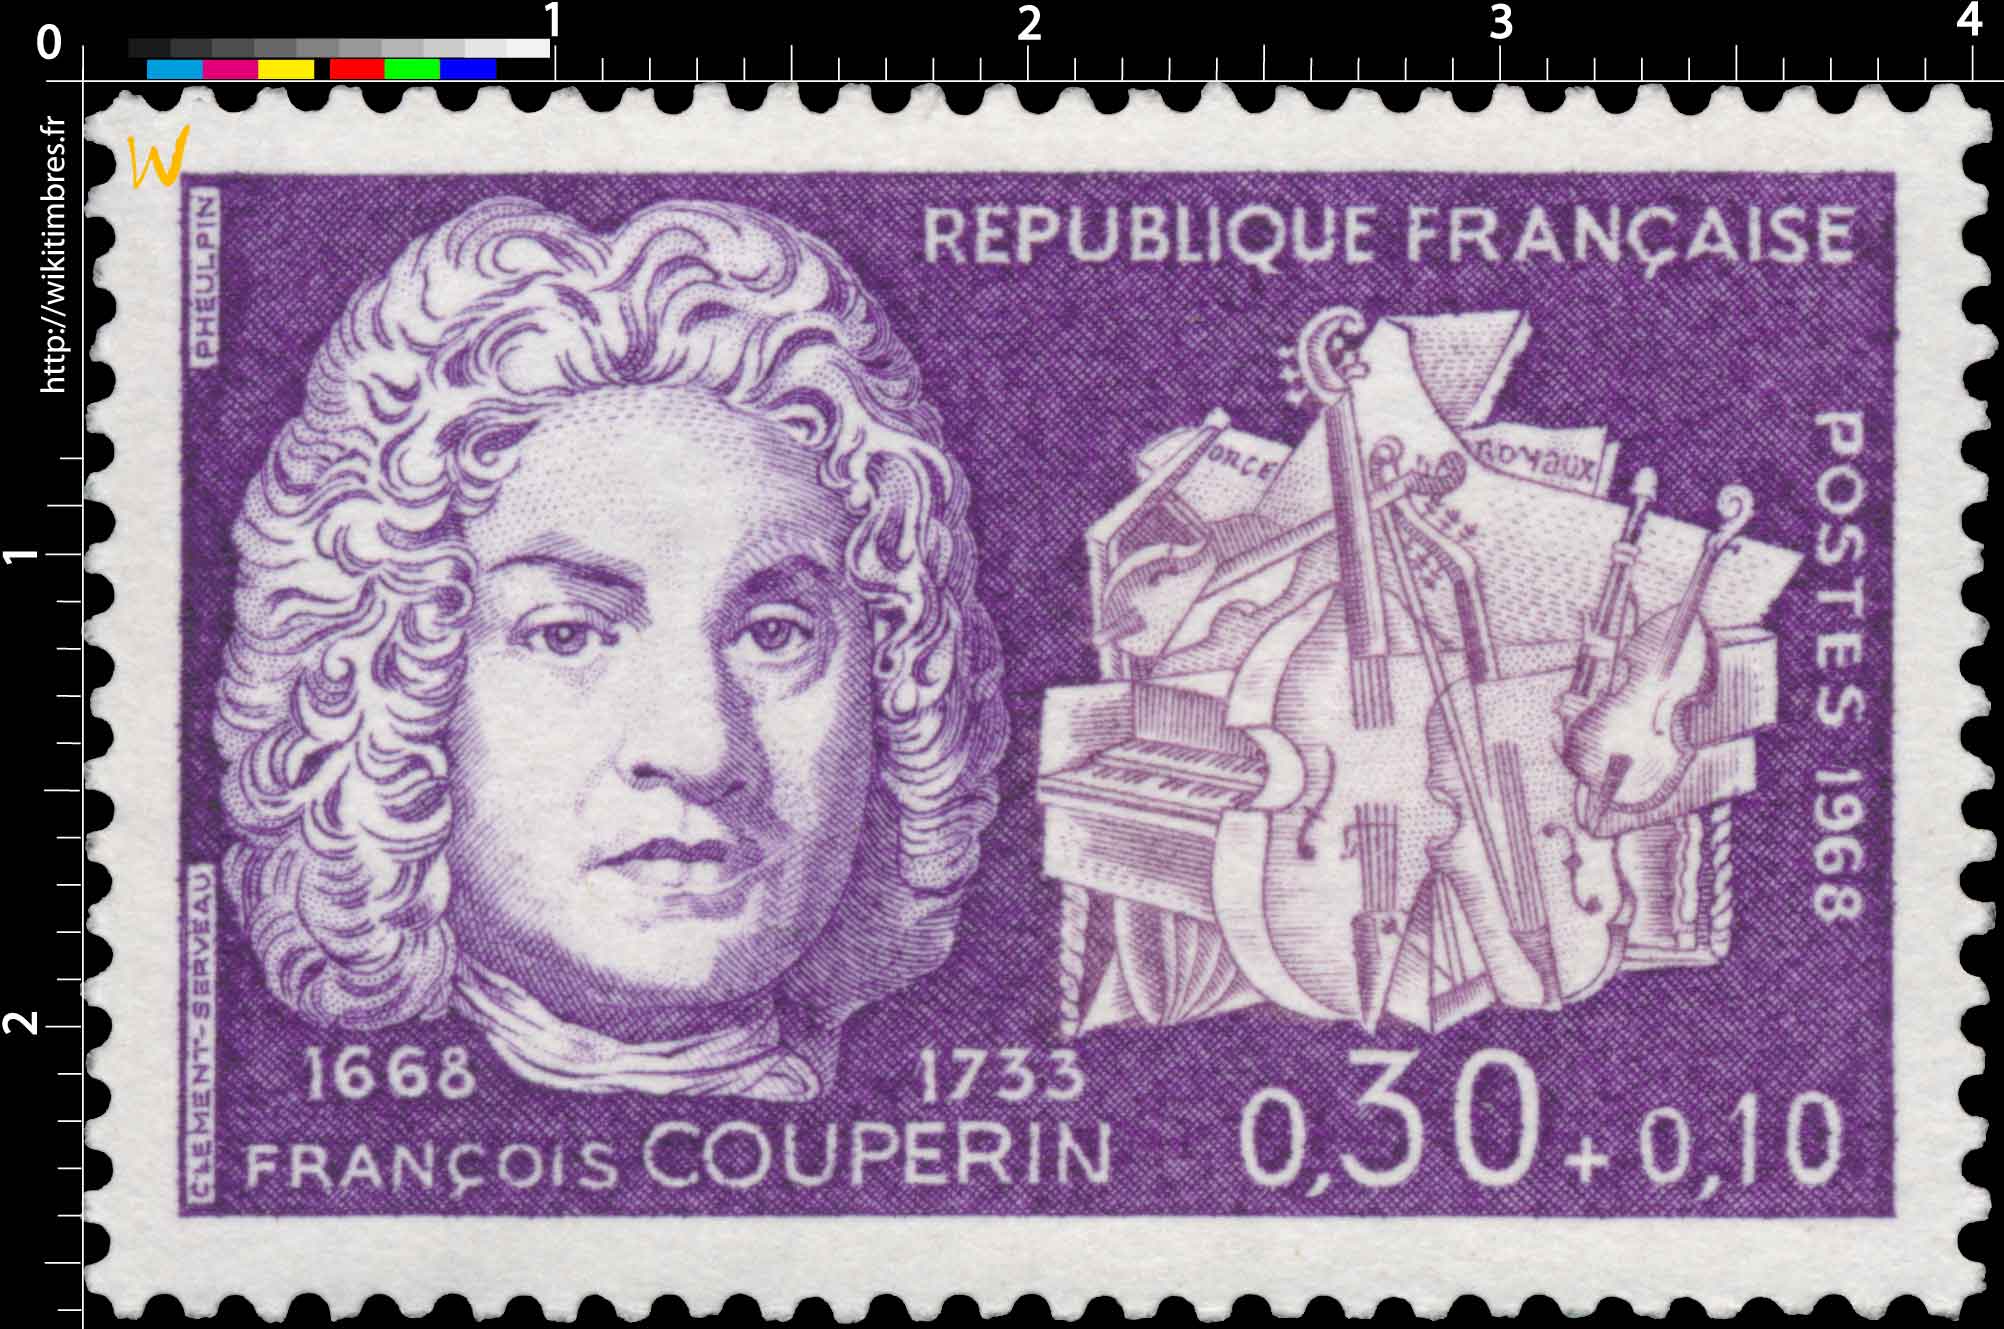 1968 FRANÇOIS COUPERIN 1668-1733